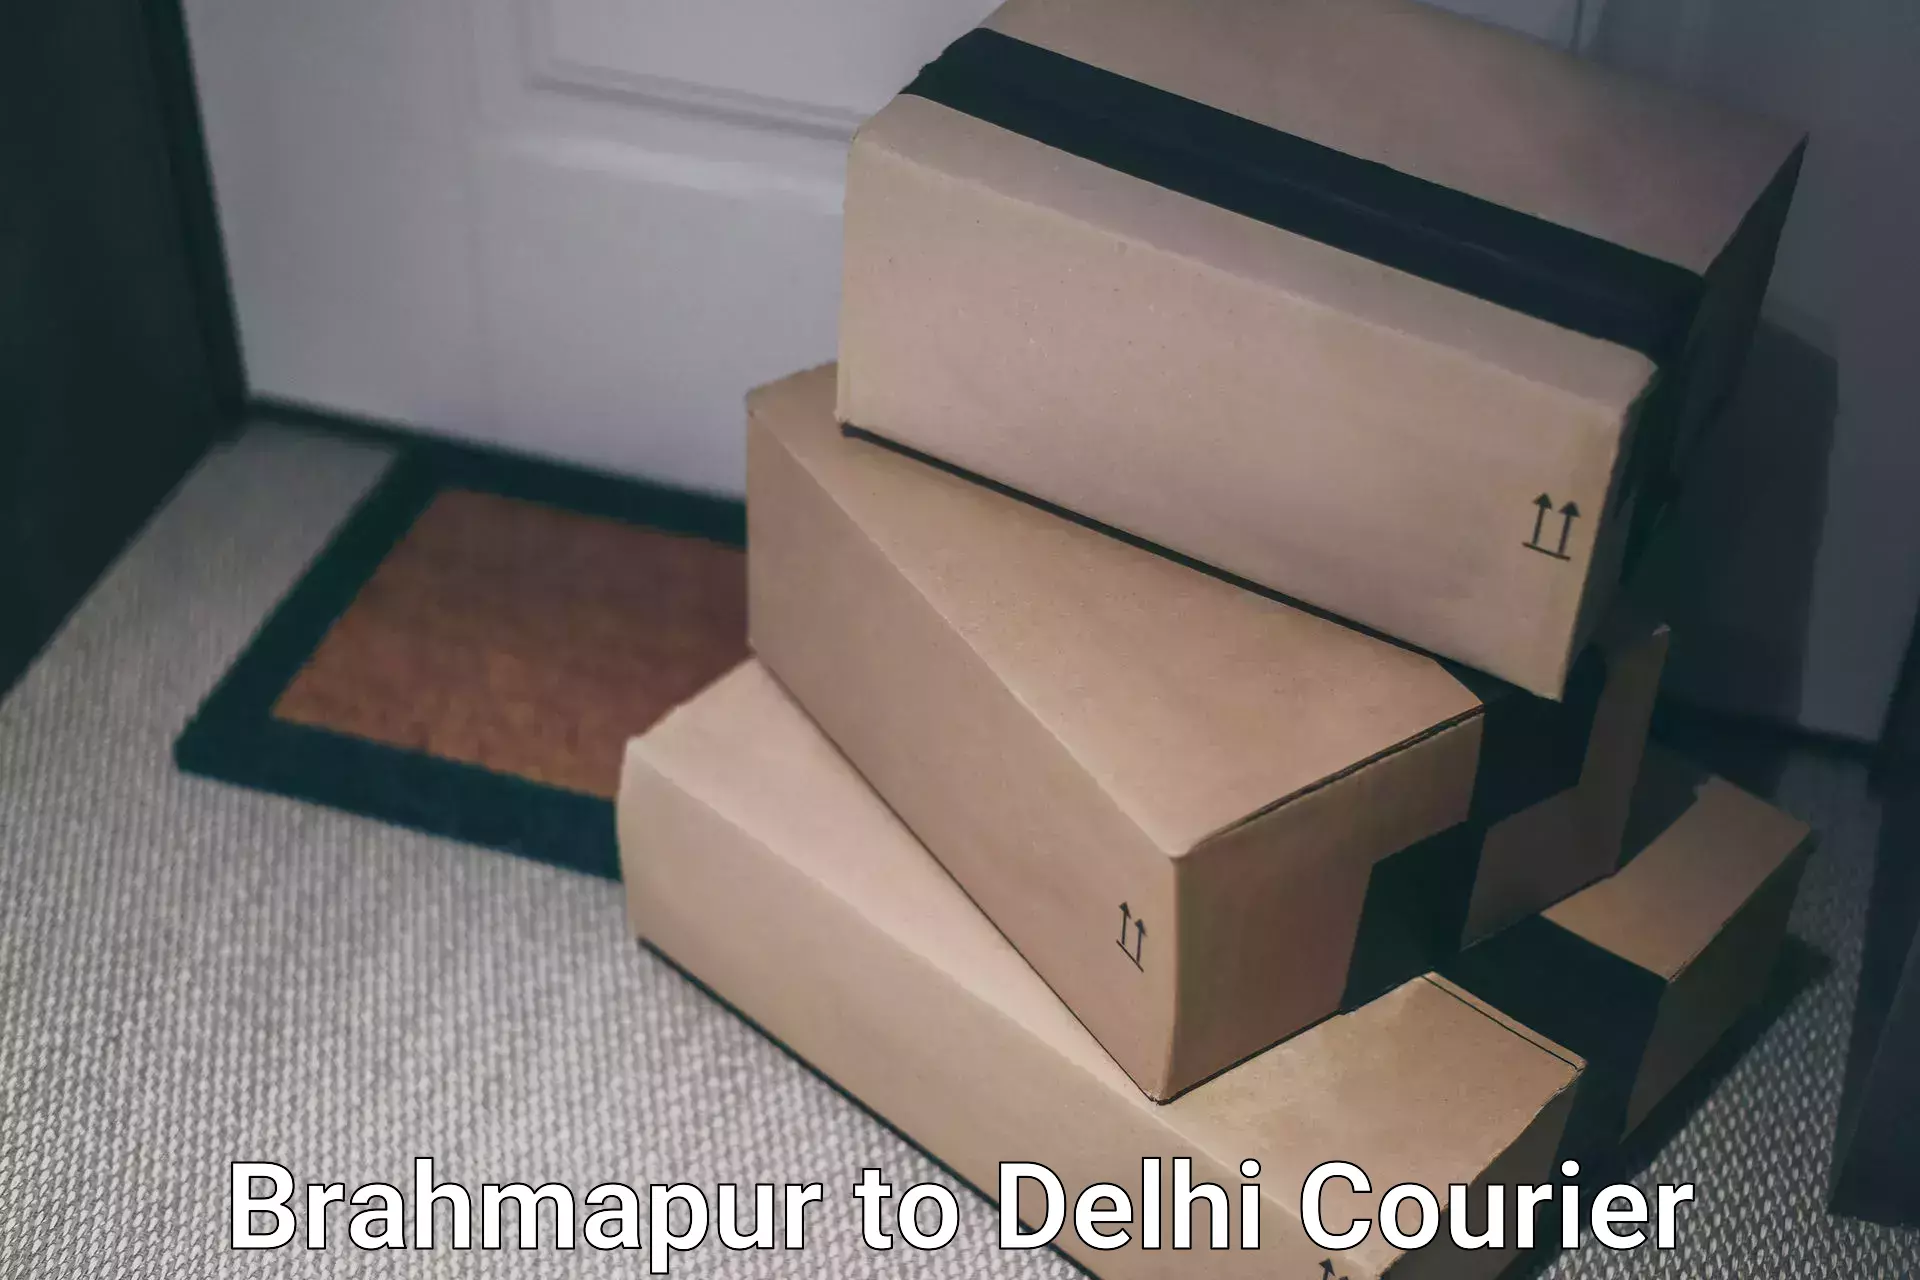 Multi-carrier shipping Brahmapur to University of Delhi